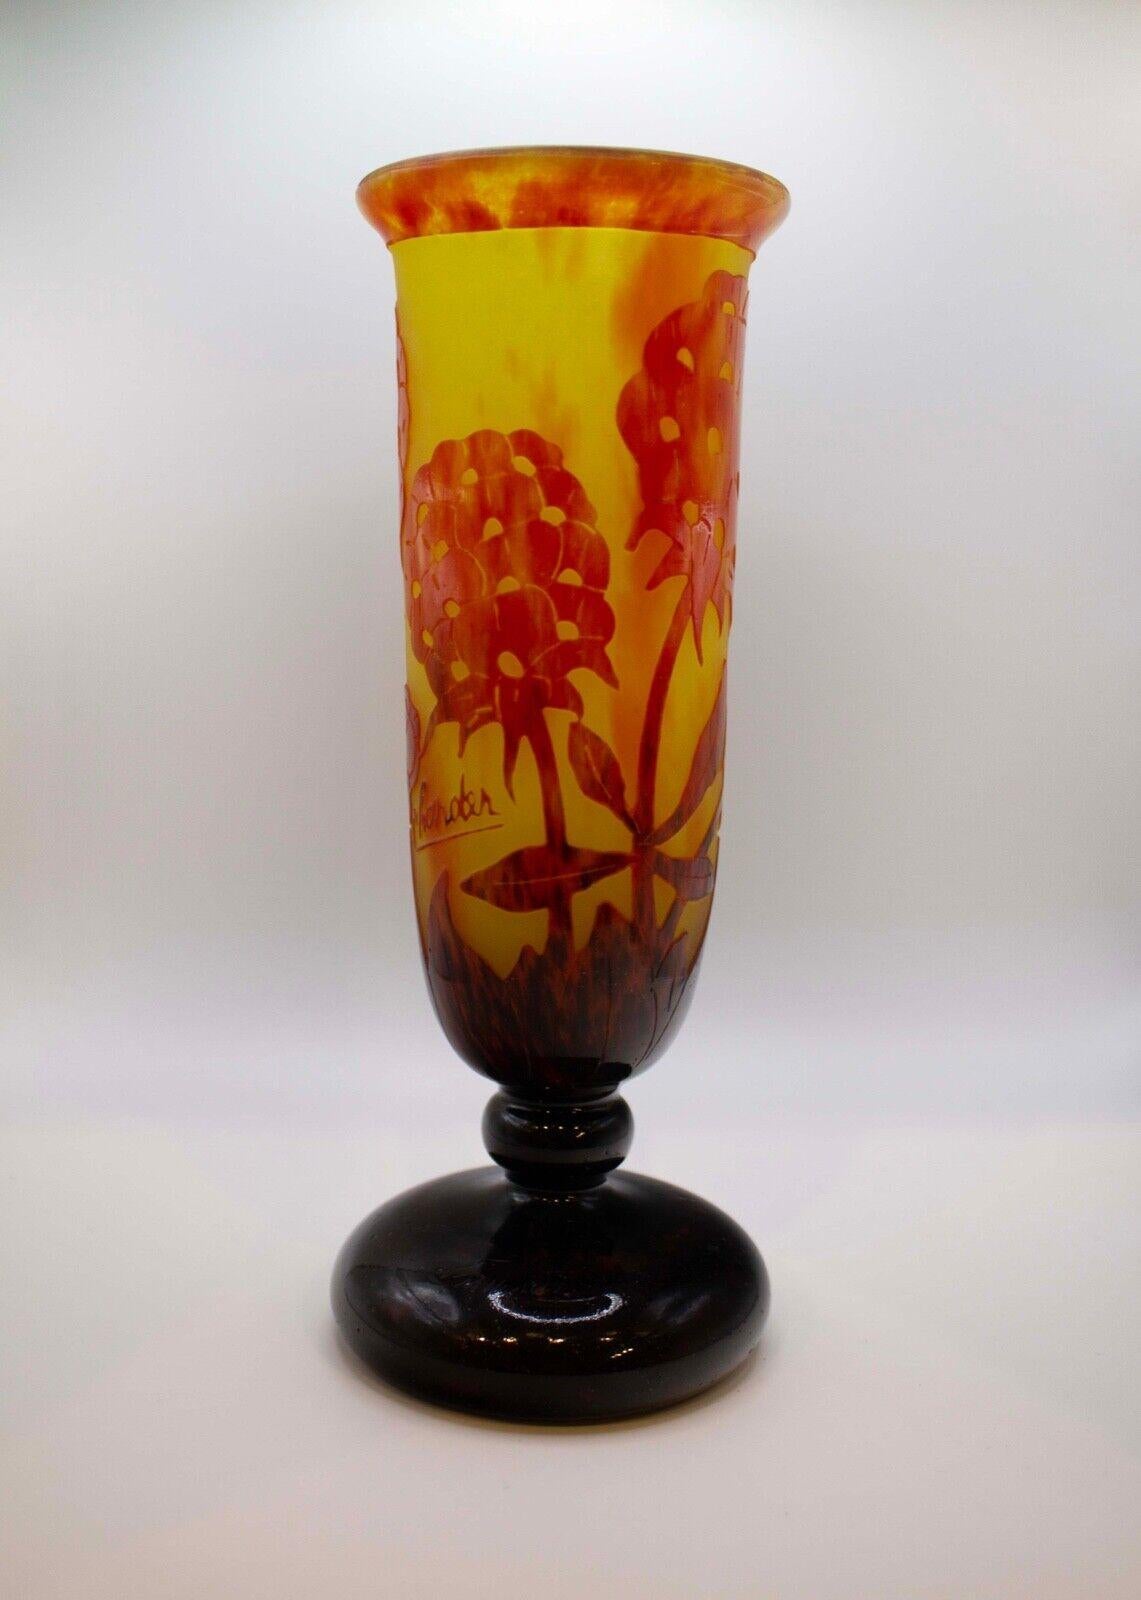 Un vase intemporel en verre camée gravé à l'acide avec un motif floral, connu sous le nom de Pivoines, par Le Verre Français. France, datant d'environ 1925. Signature gravée sur le dessus de la base Charder Le Verre Français. Un élégant design en